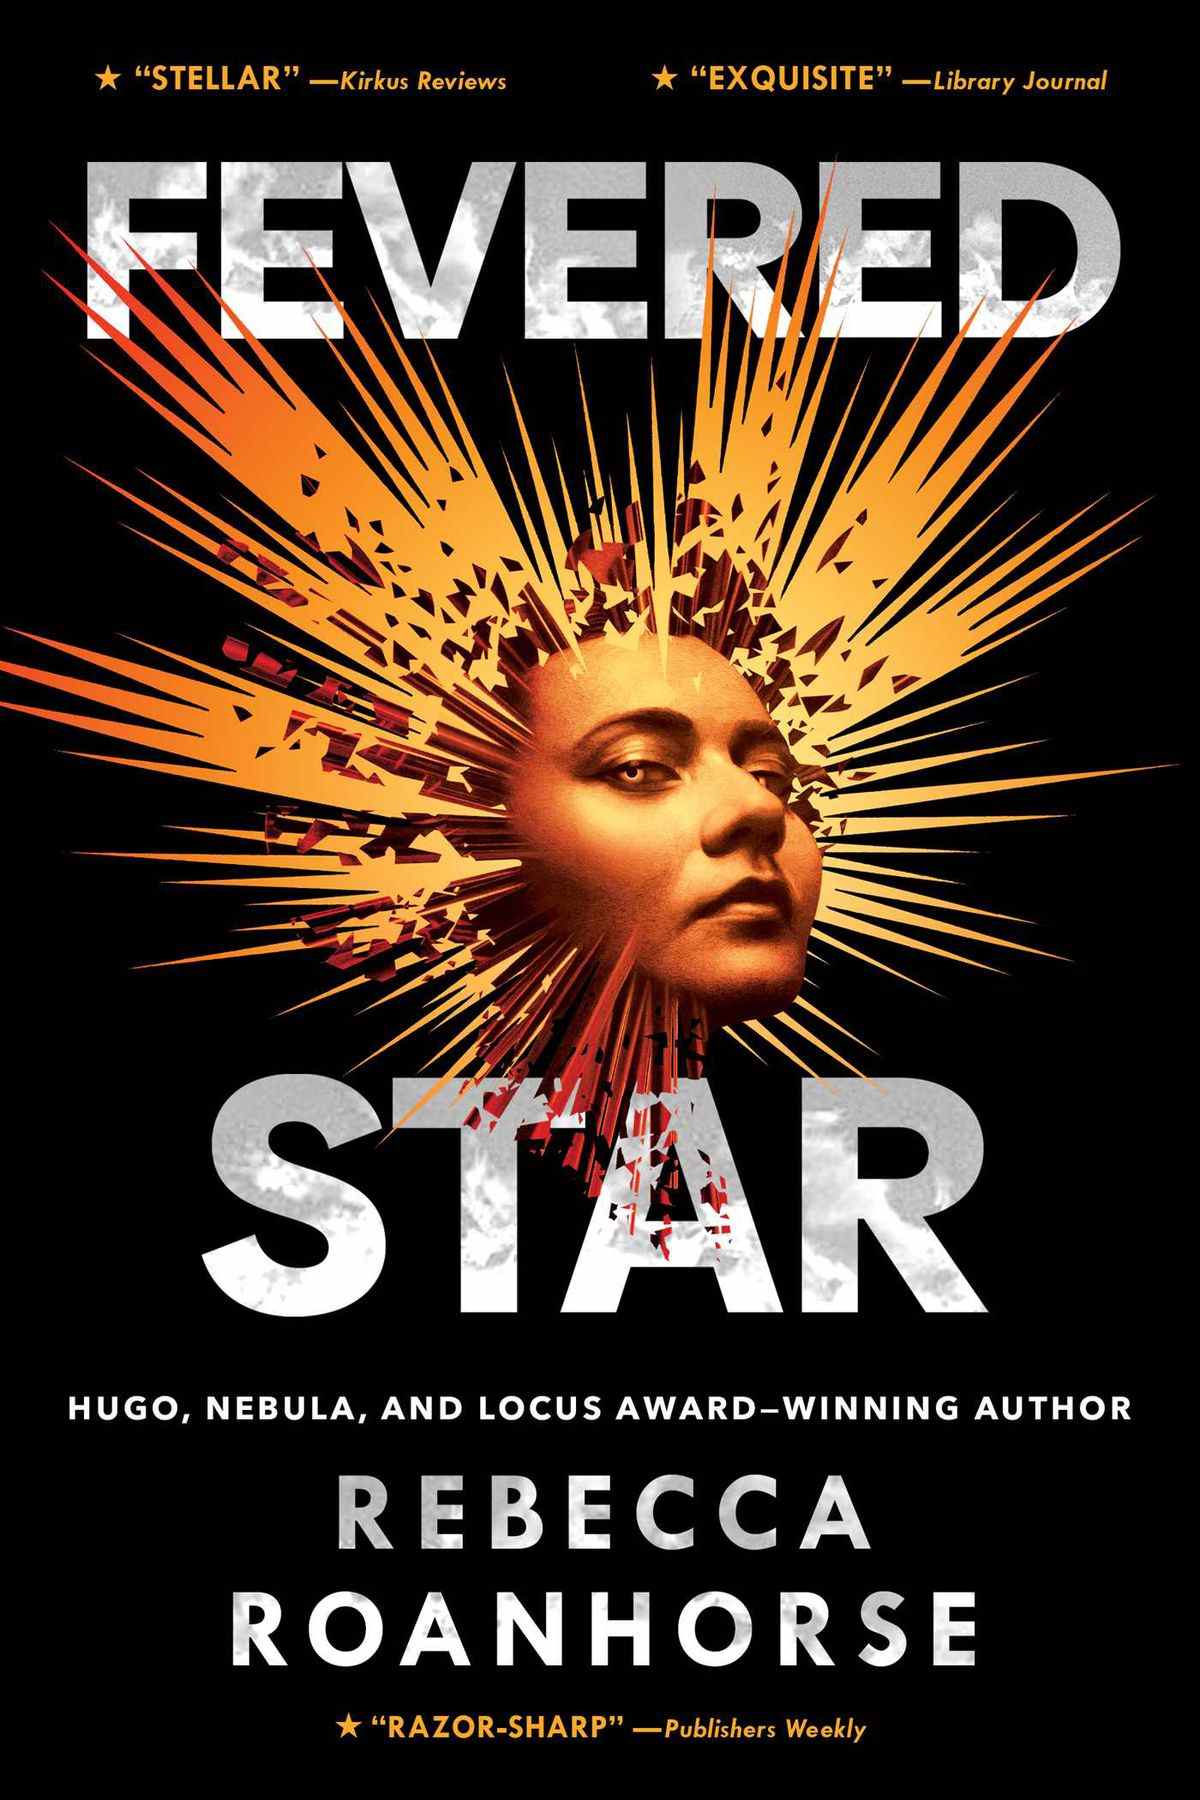 La couverture de Fevered Star, qui centre un visage avec une lumière dorée illustrée perçant autour de lui.